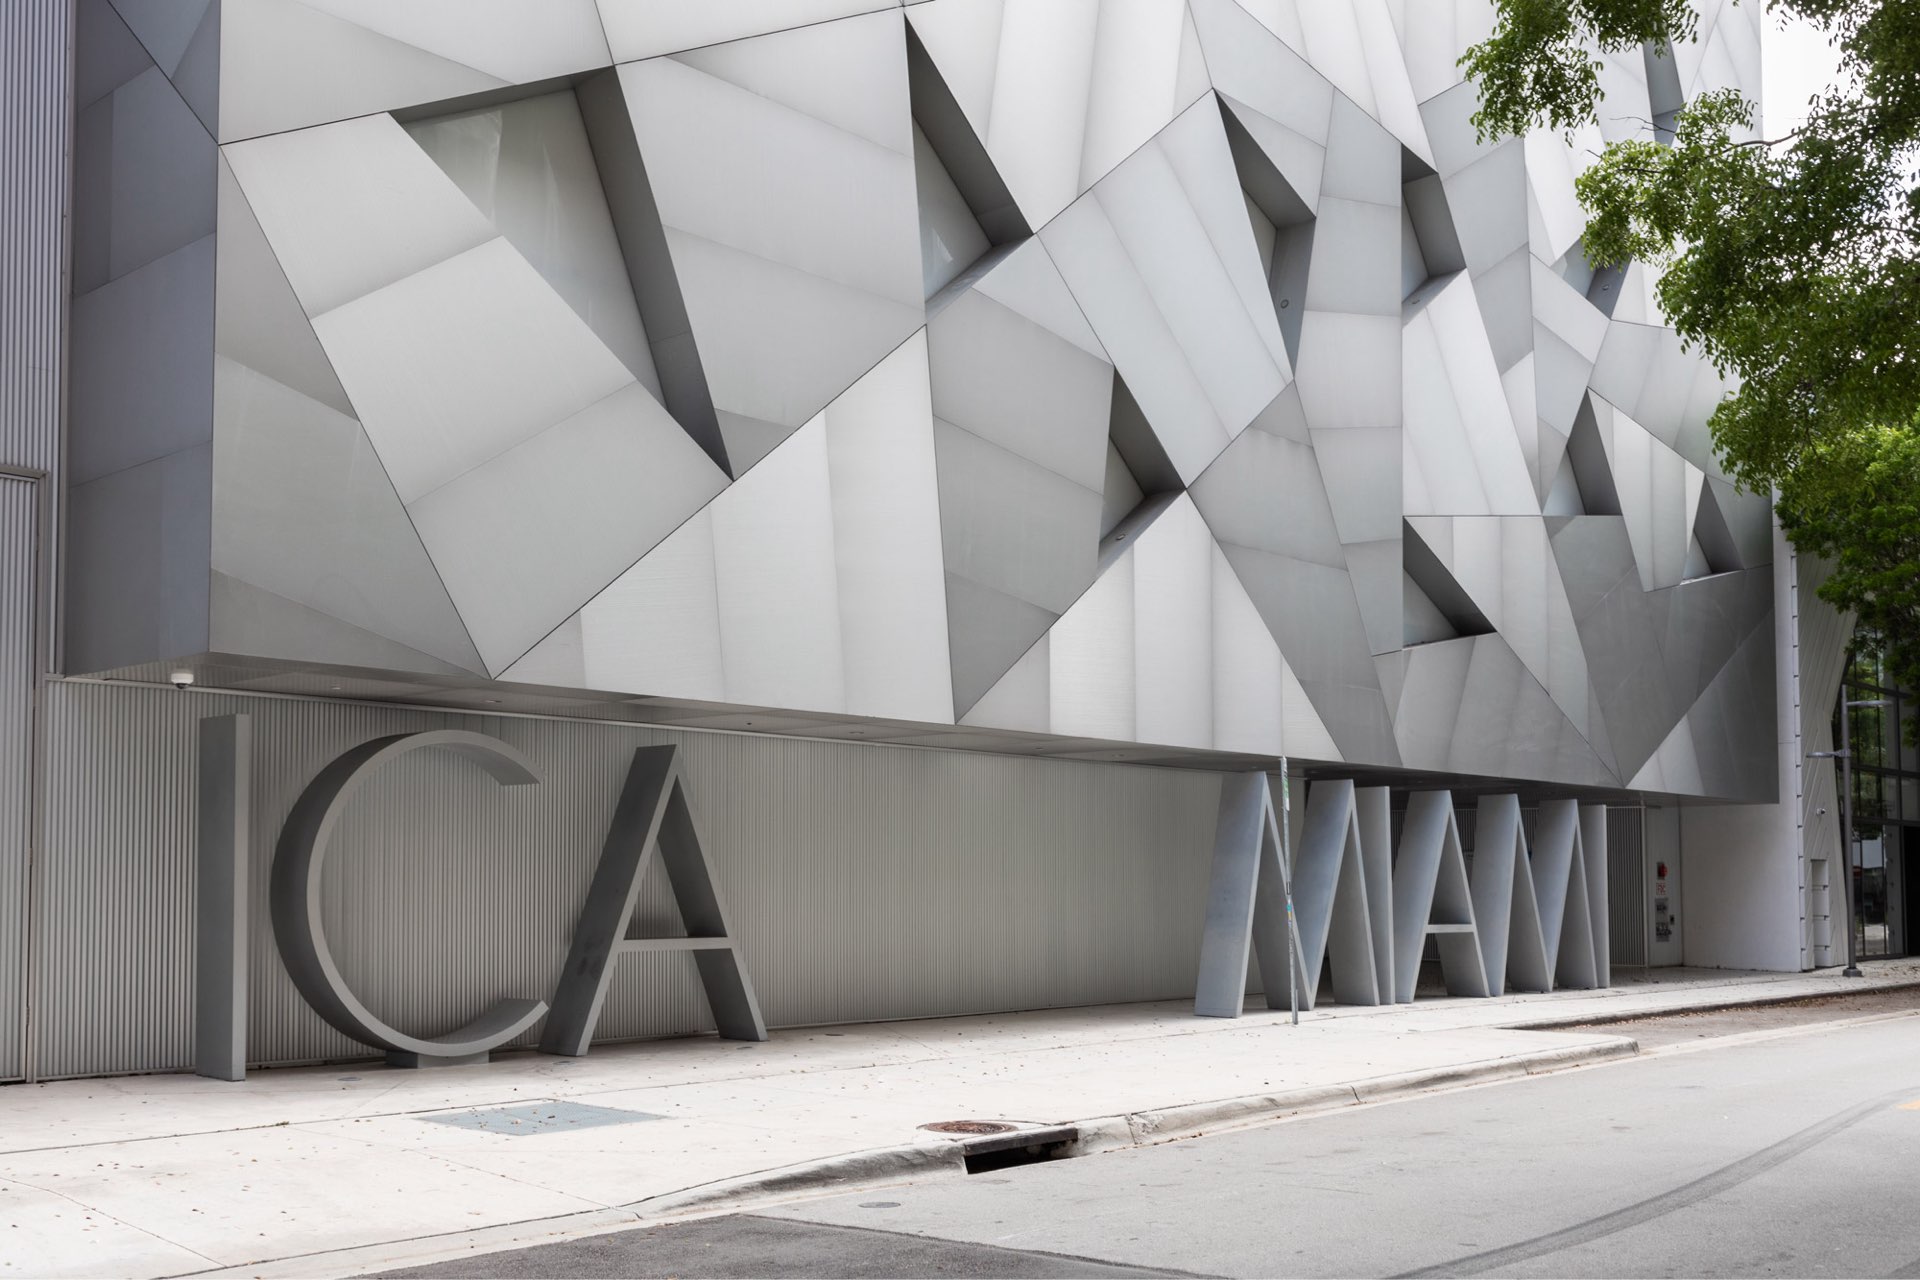 Miami’s Institute of Contemporary Art